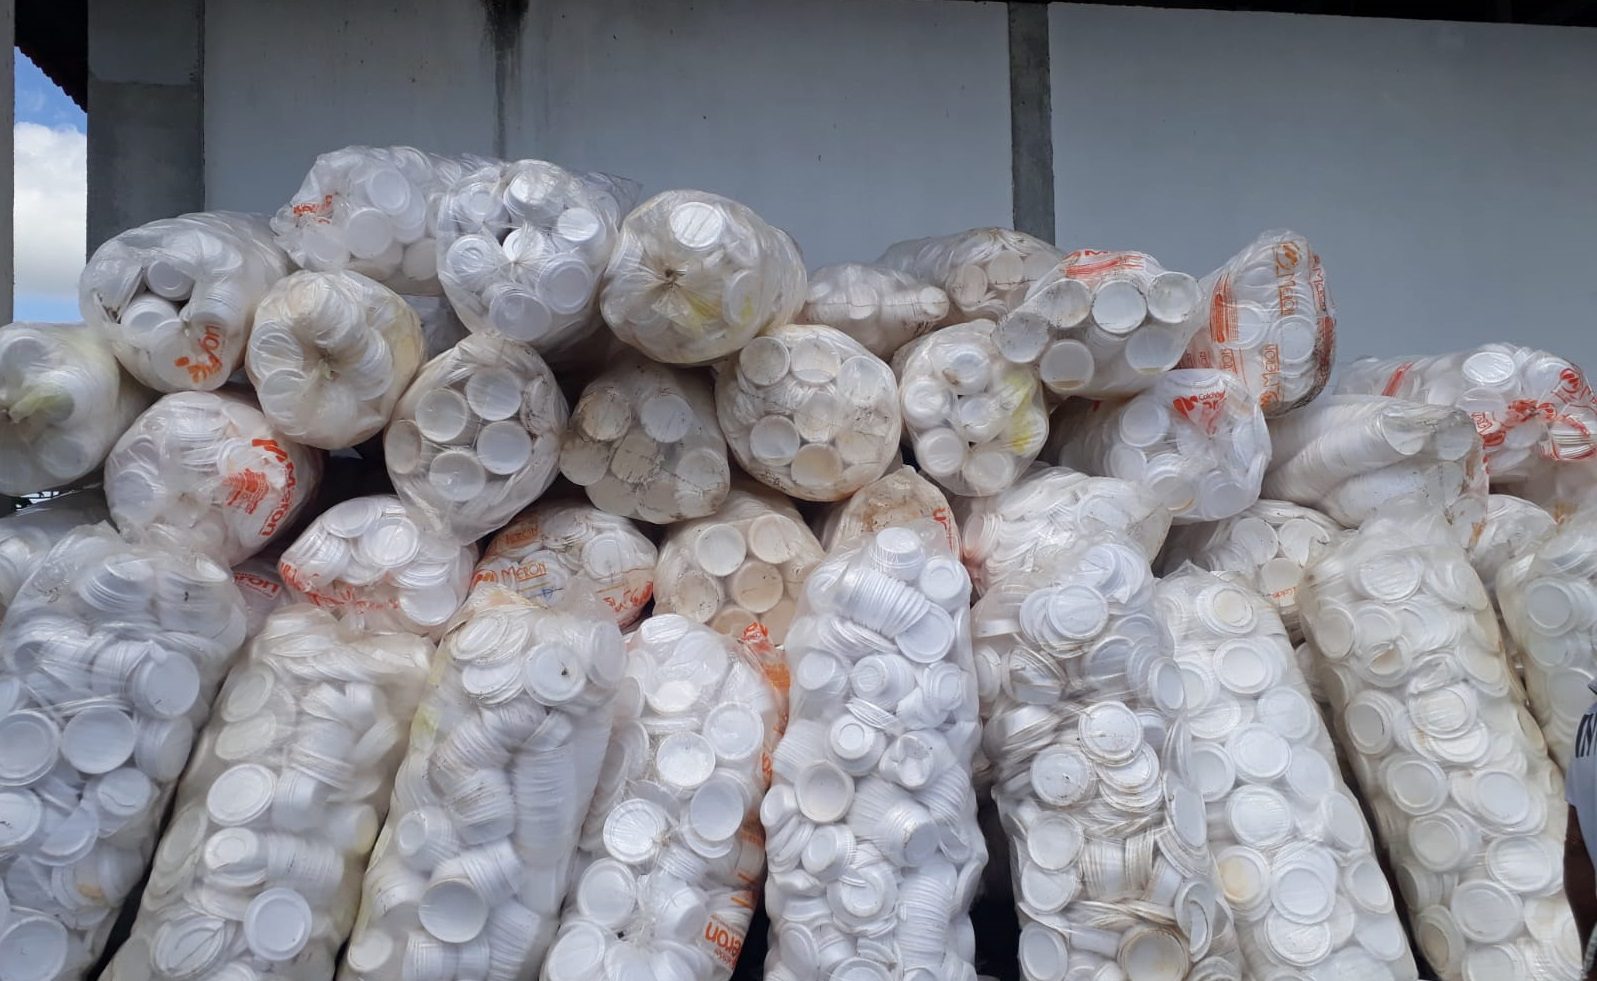  Termotécnica contribui com a reciclagem de marmitas descartáveis utilizadas nas refeições de detentos em Sergipe